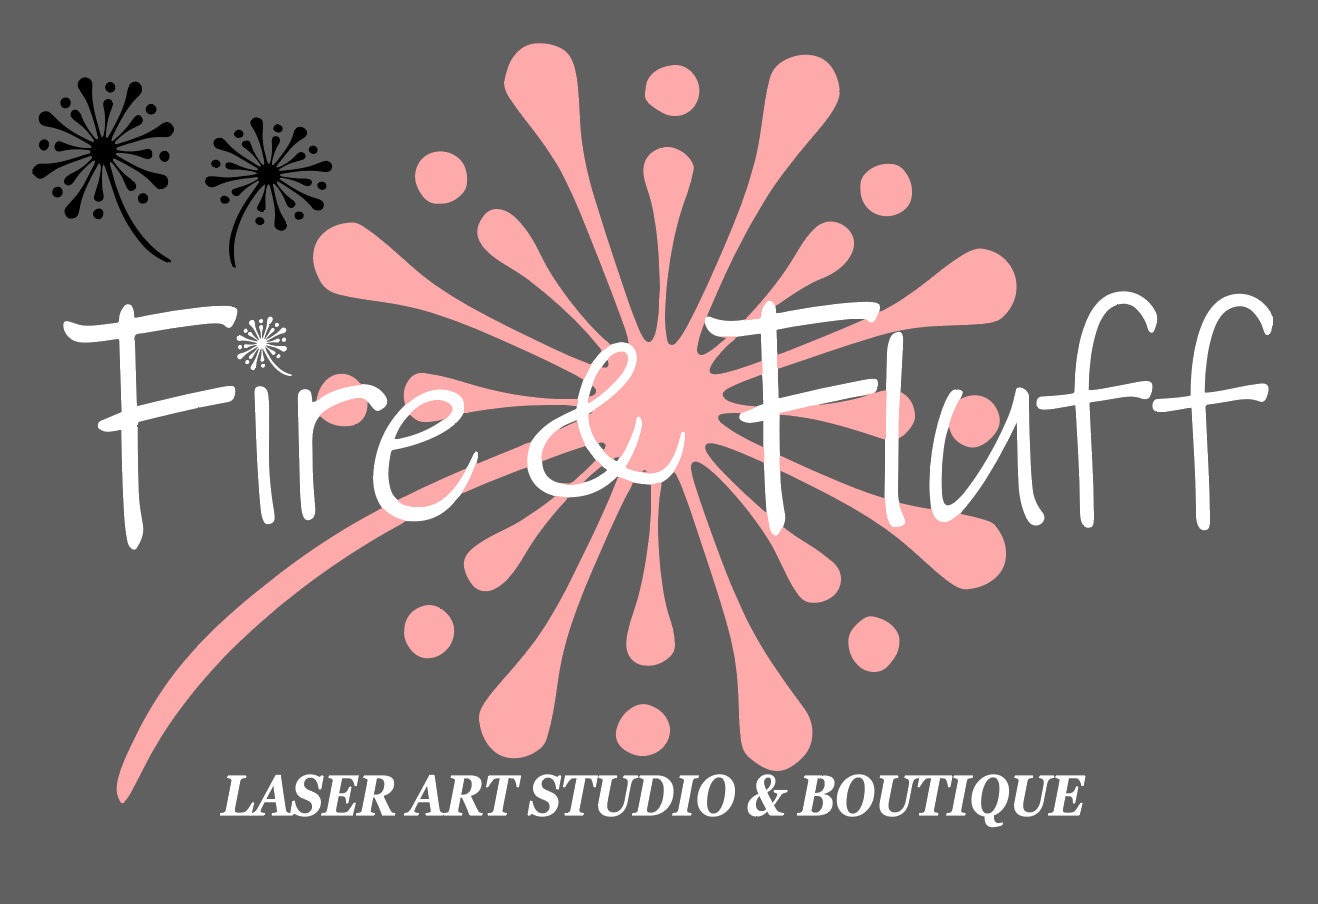 Fire & Fluff Gift Card